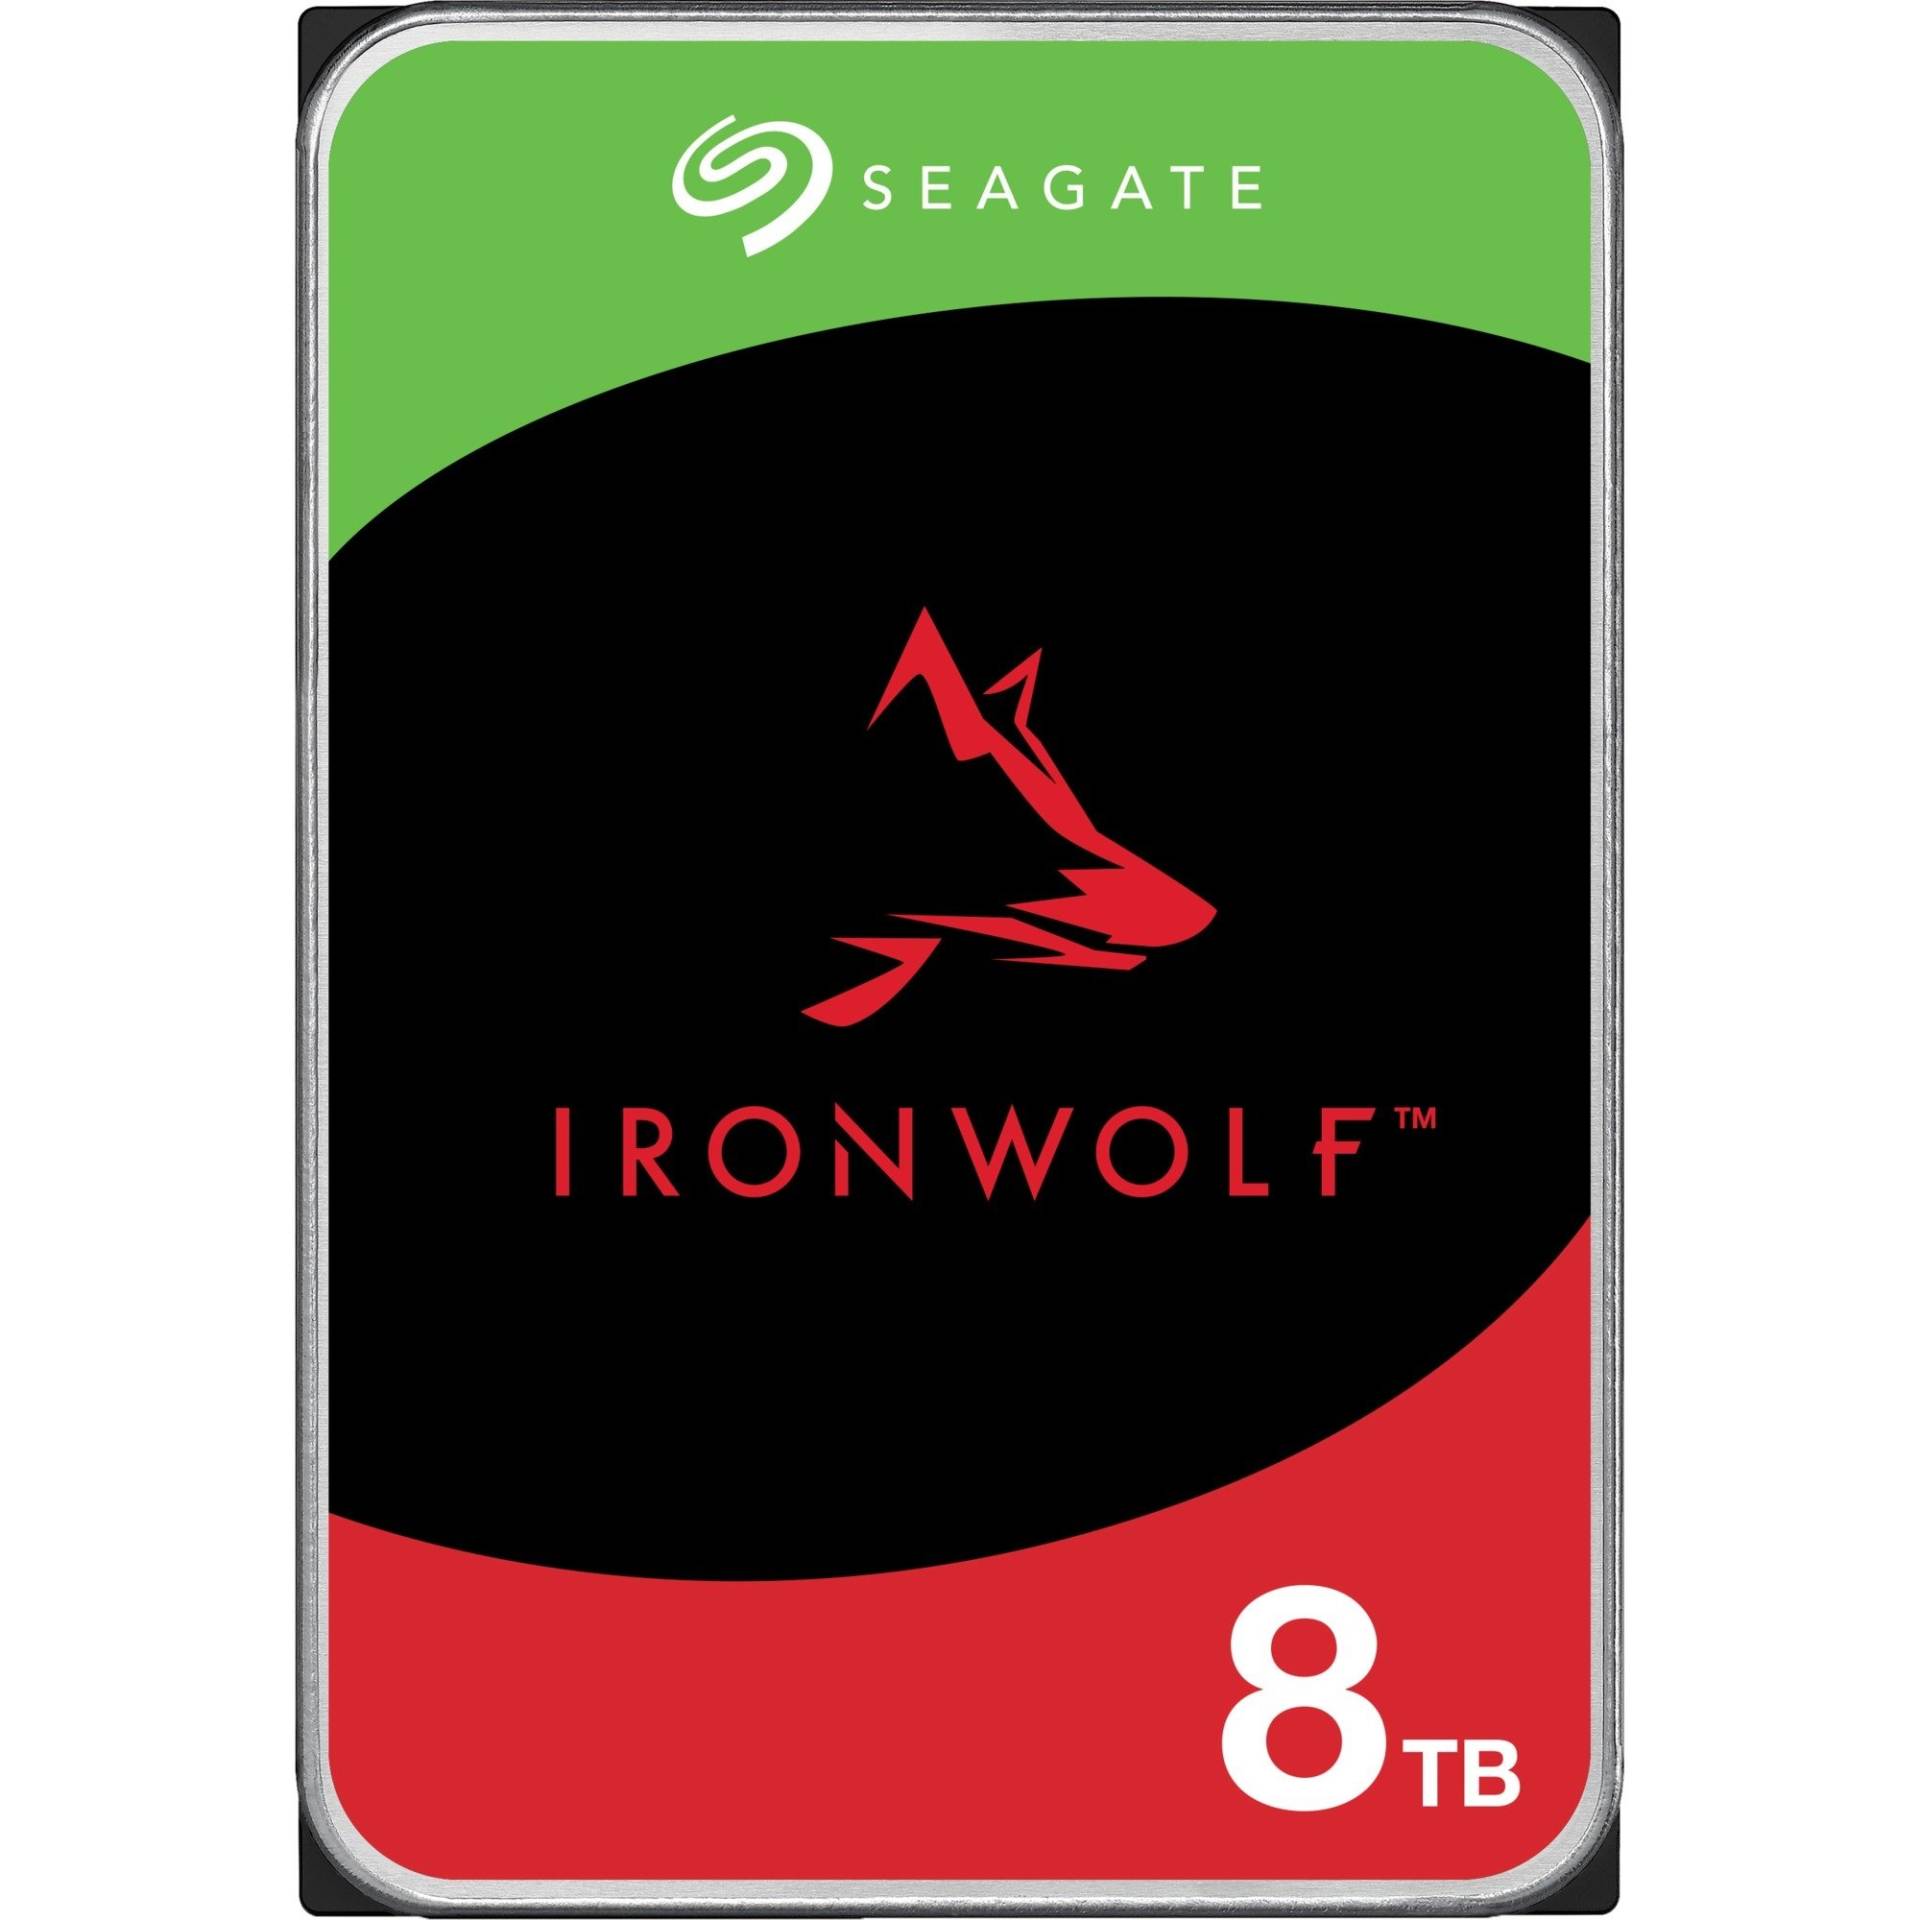 IronWolf NAS 8 TB CMR, Festplatte von Seagate